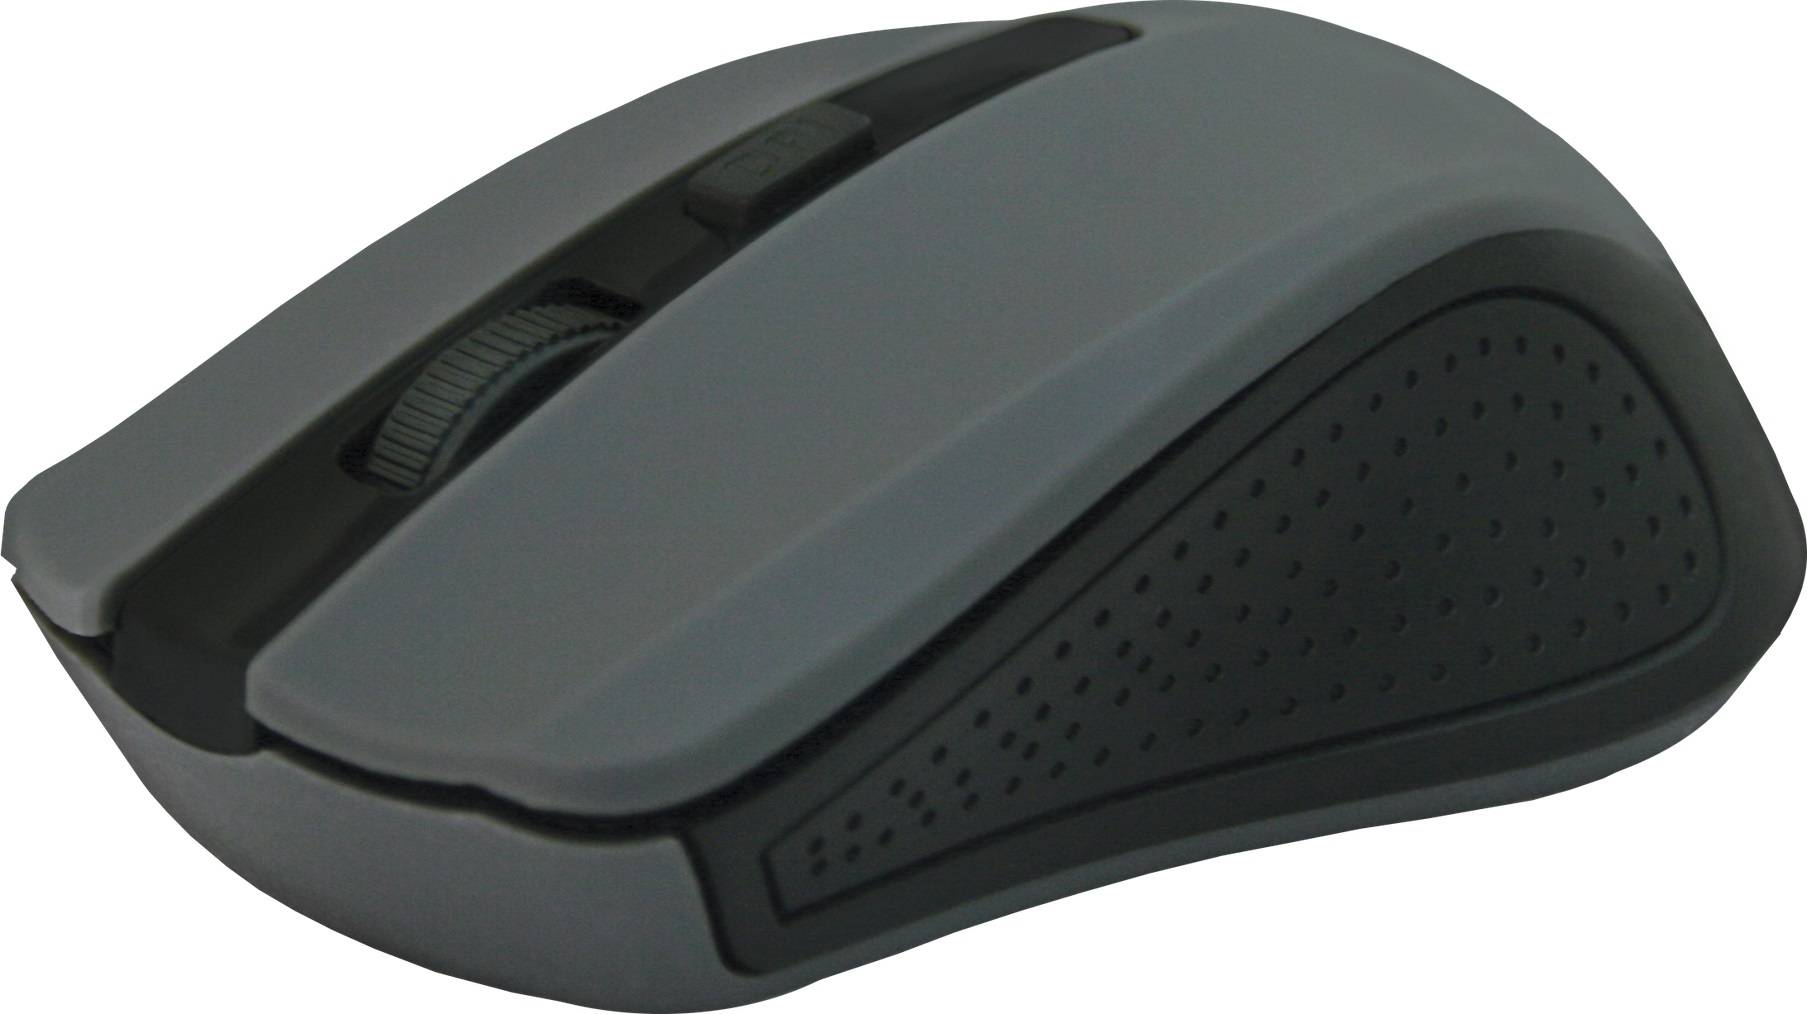 Беспроводная оптическая мышь Accura MM-935 серый, 4 кнопки,800-1600 Dpi